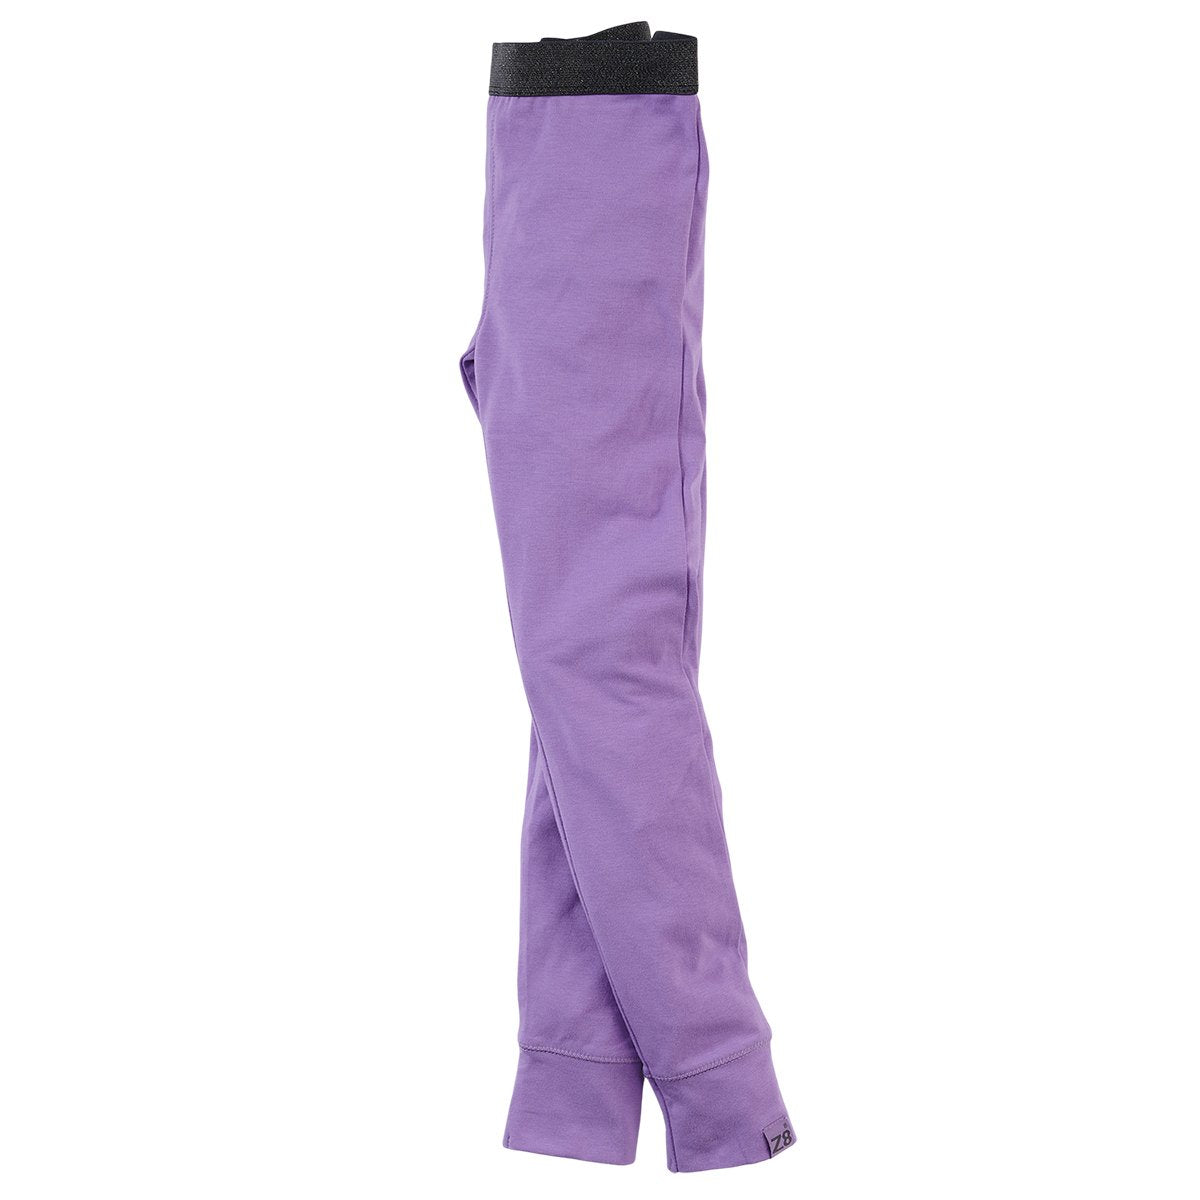 Meisjes Legging Cynthia van Z8 in de kleur Purple power in maat 140.